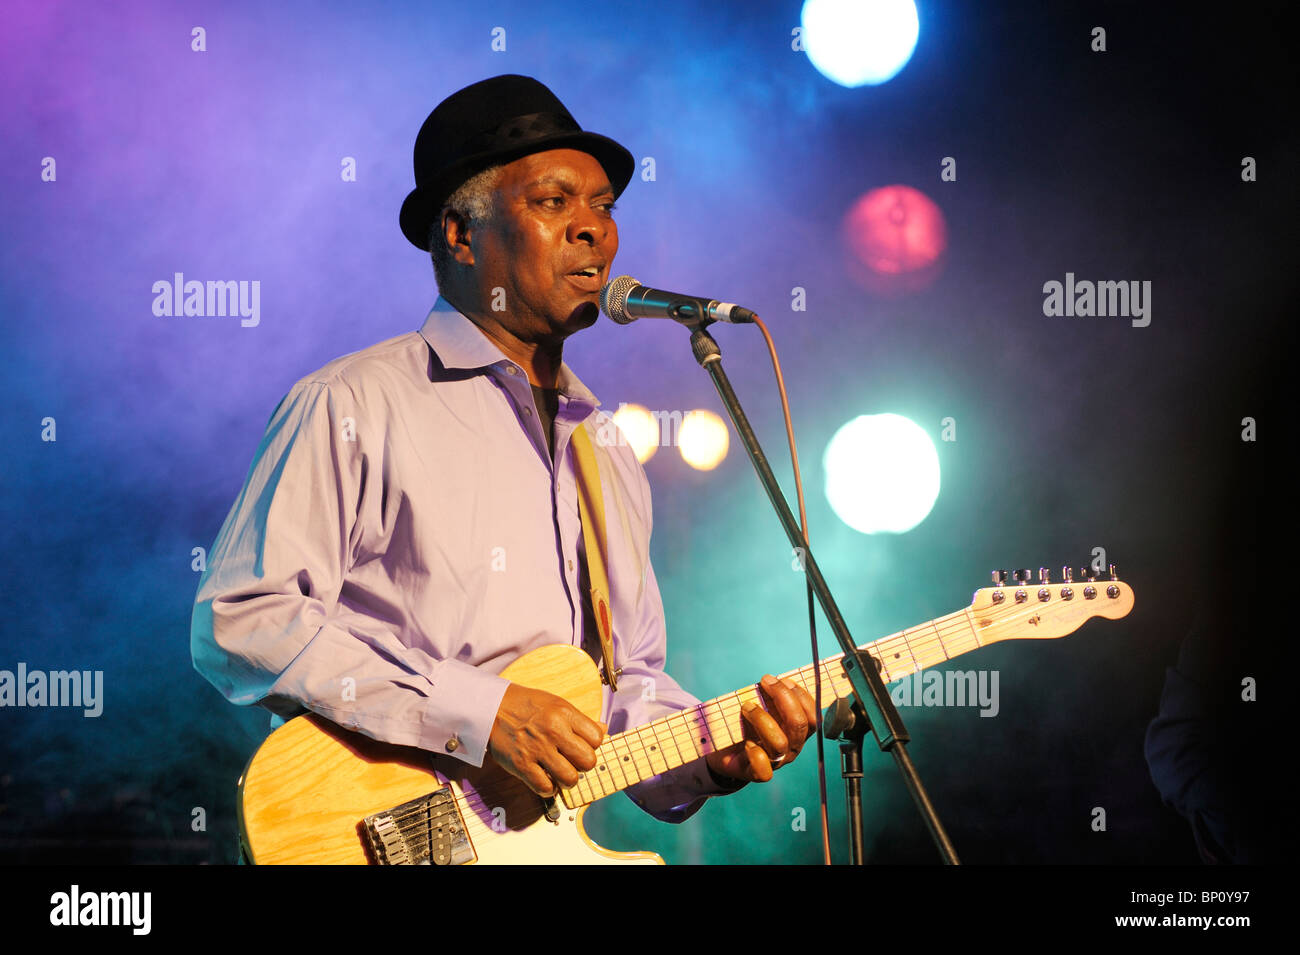 Booker T. Jones, musicien chanteur de blues américain d'effectuer dans la scène principale de cadrage. Maryport Blues Festival, 2010. Cumbria, Angleterre Banque D'Images